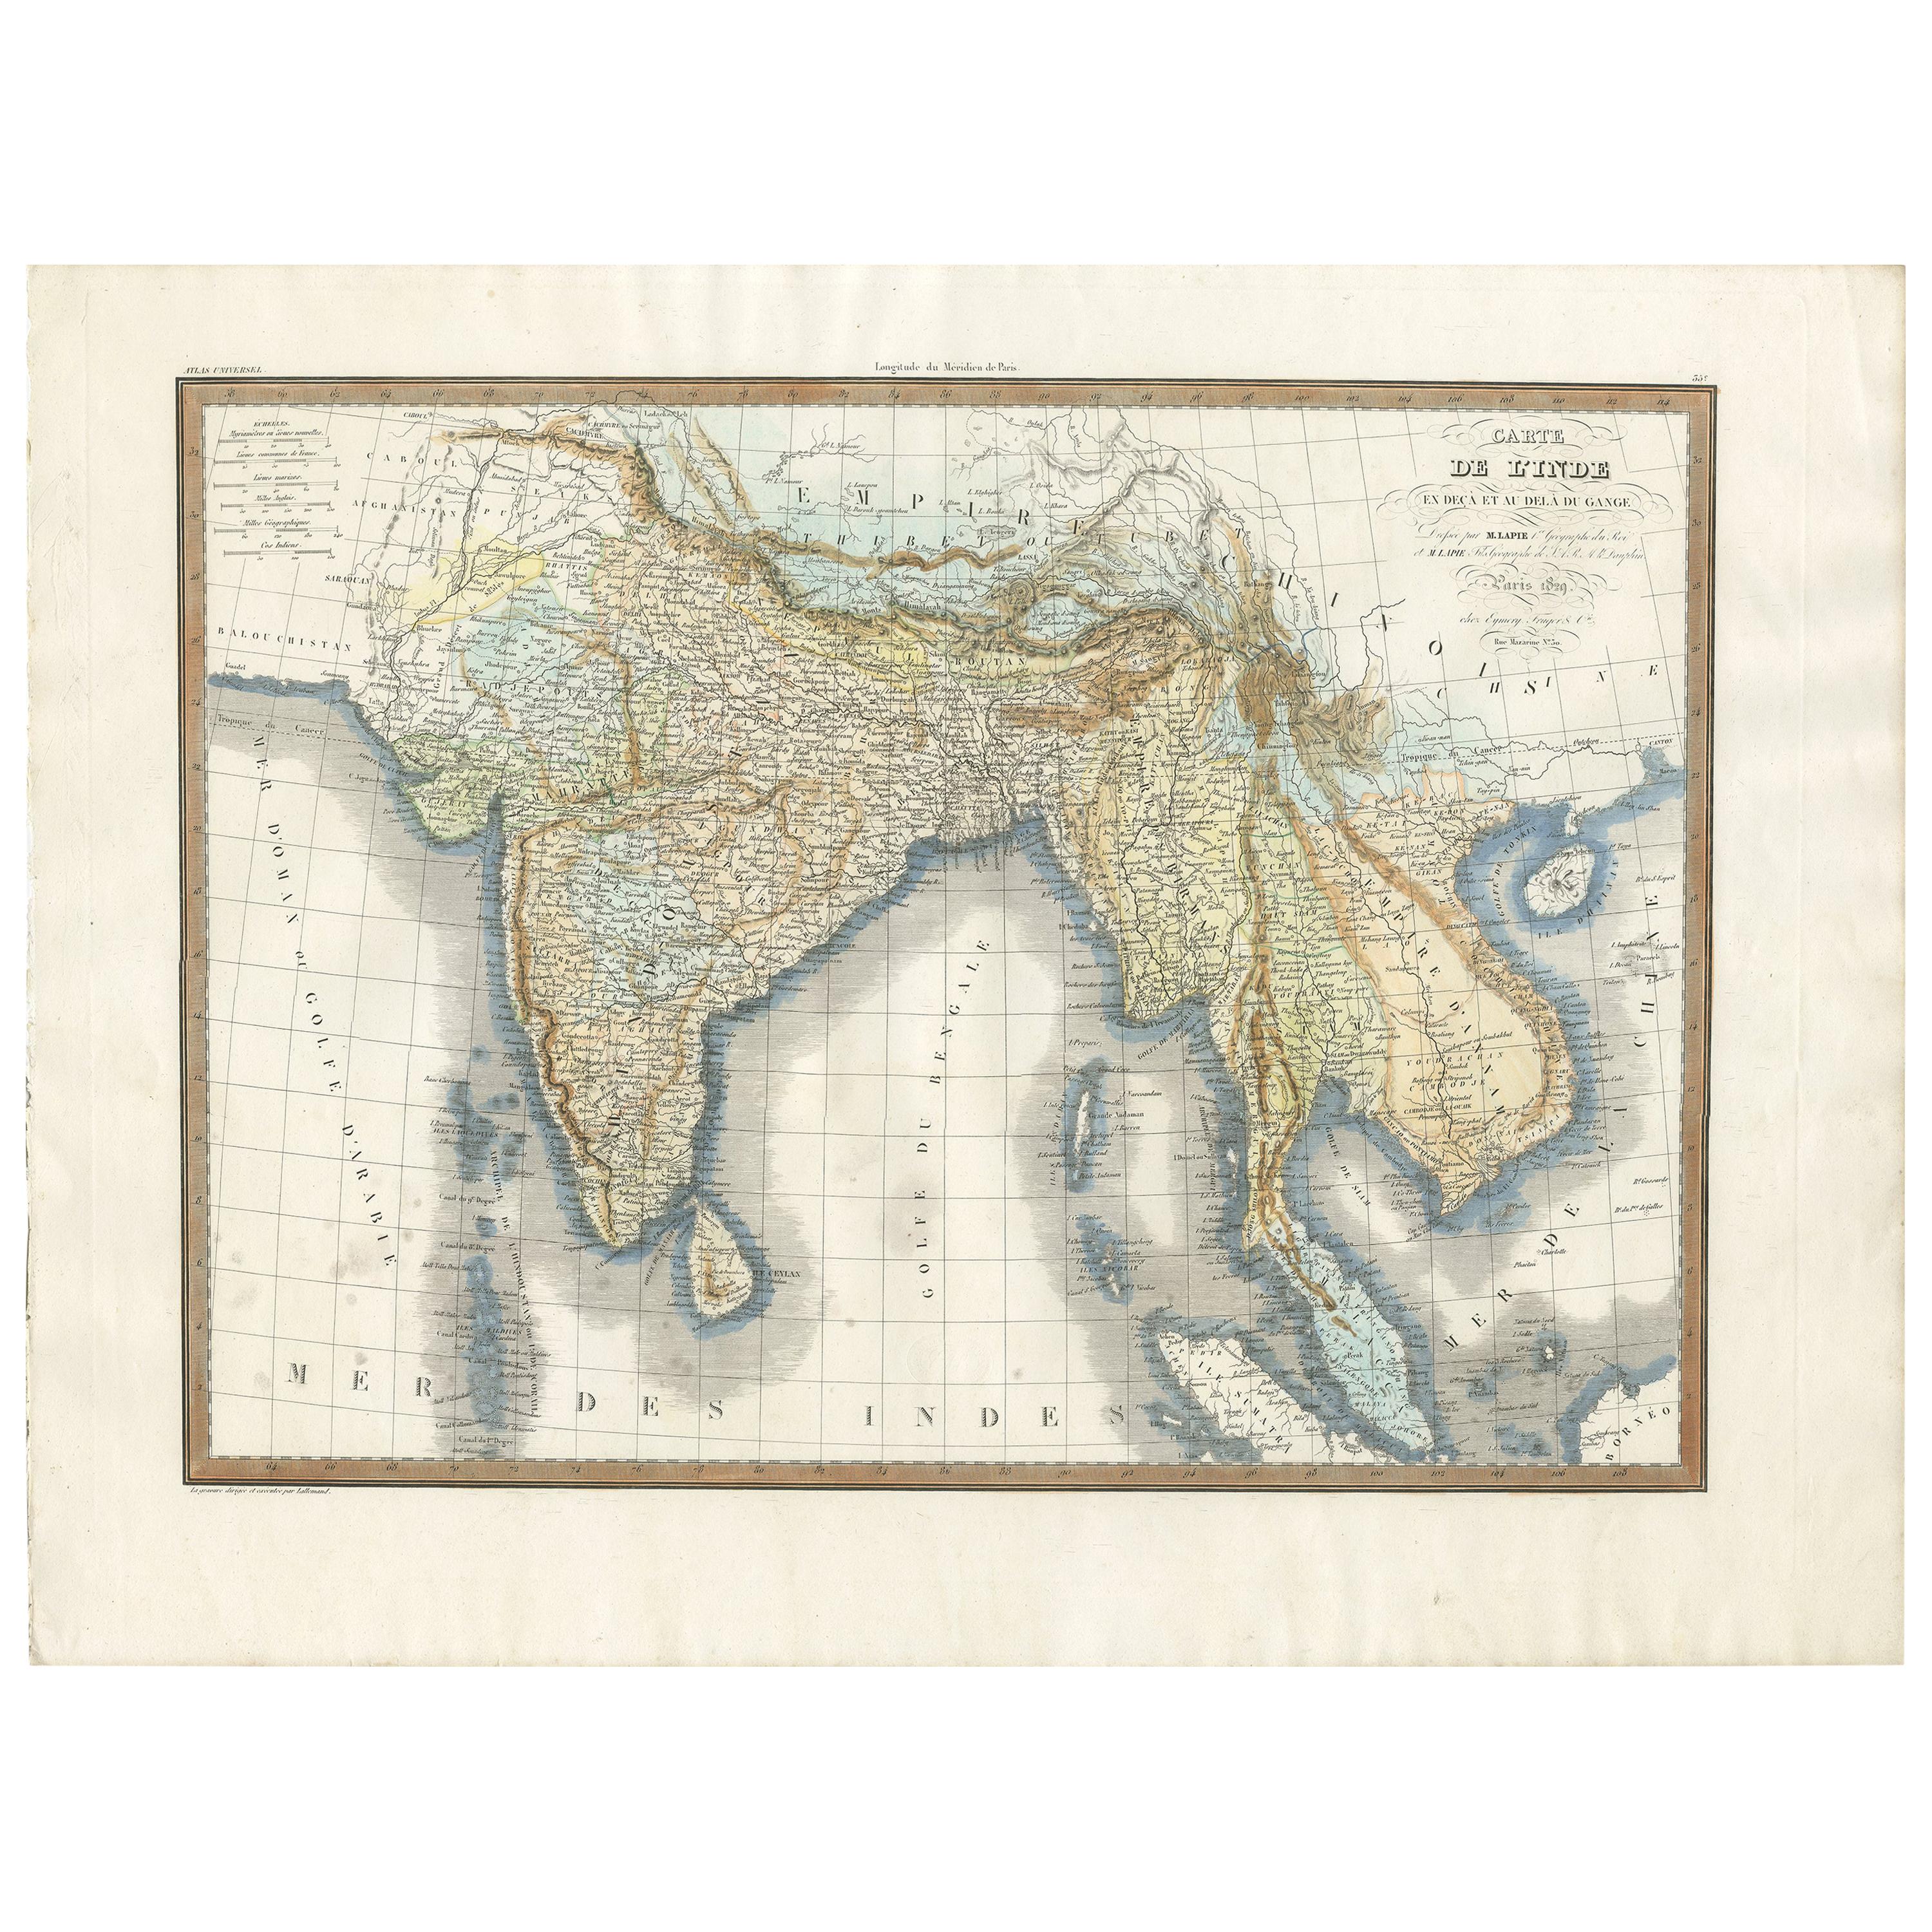 Carte ancienne d'Asie du Sud, publiée en 1833